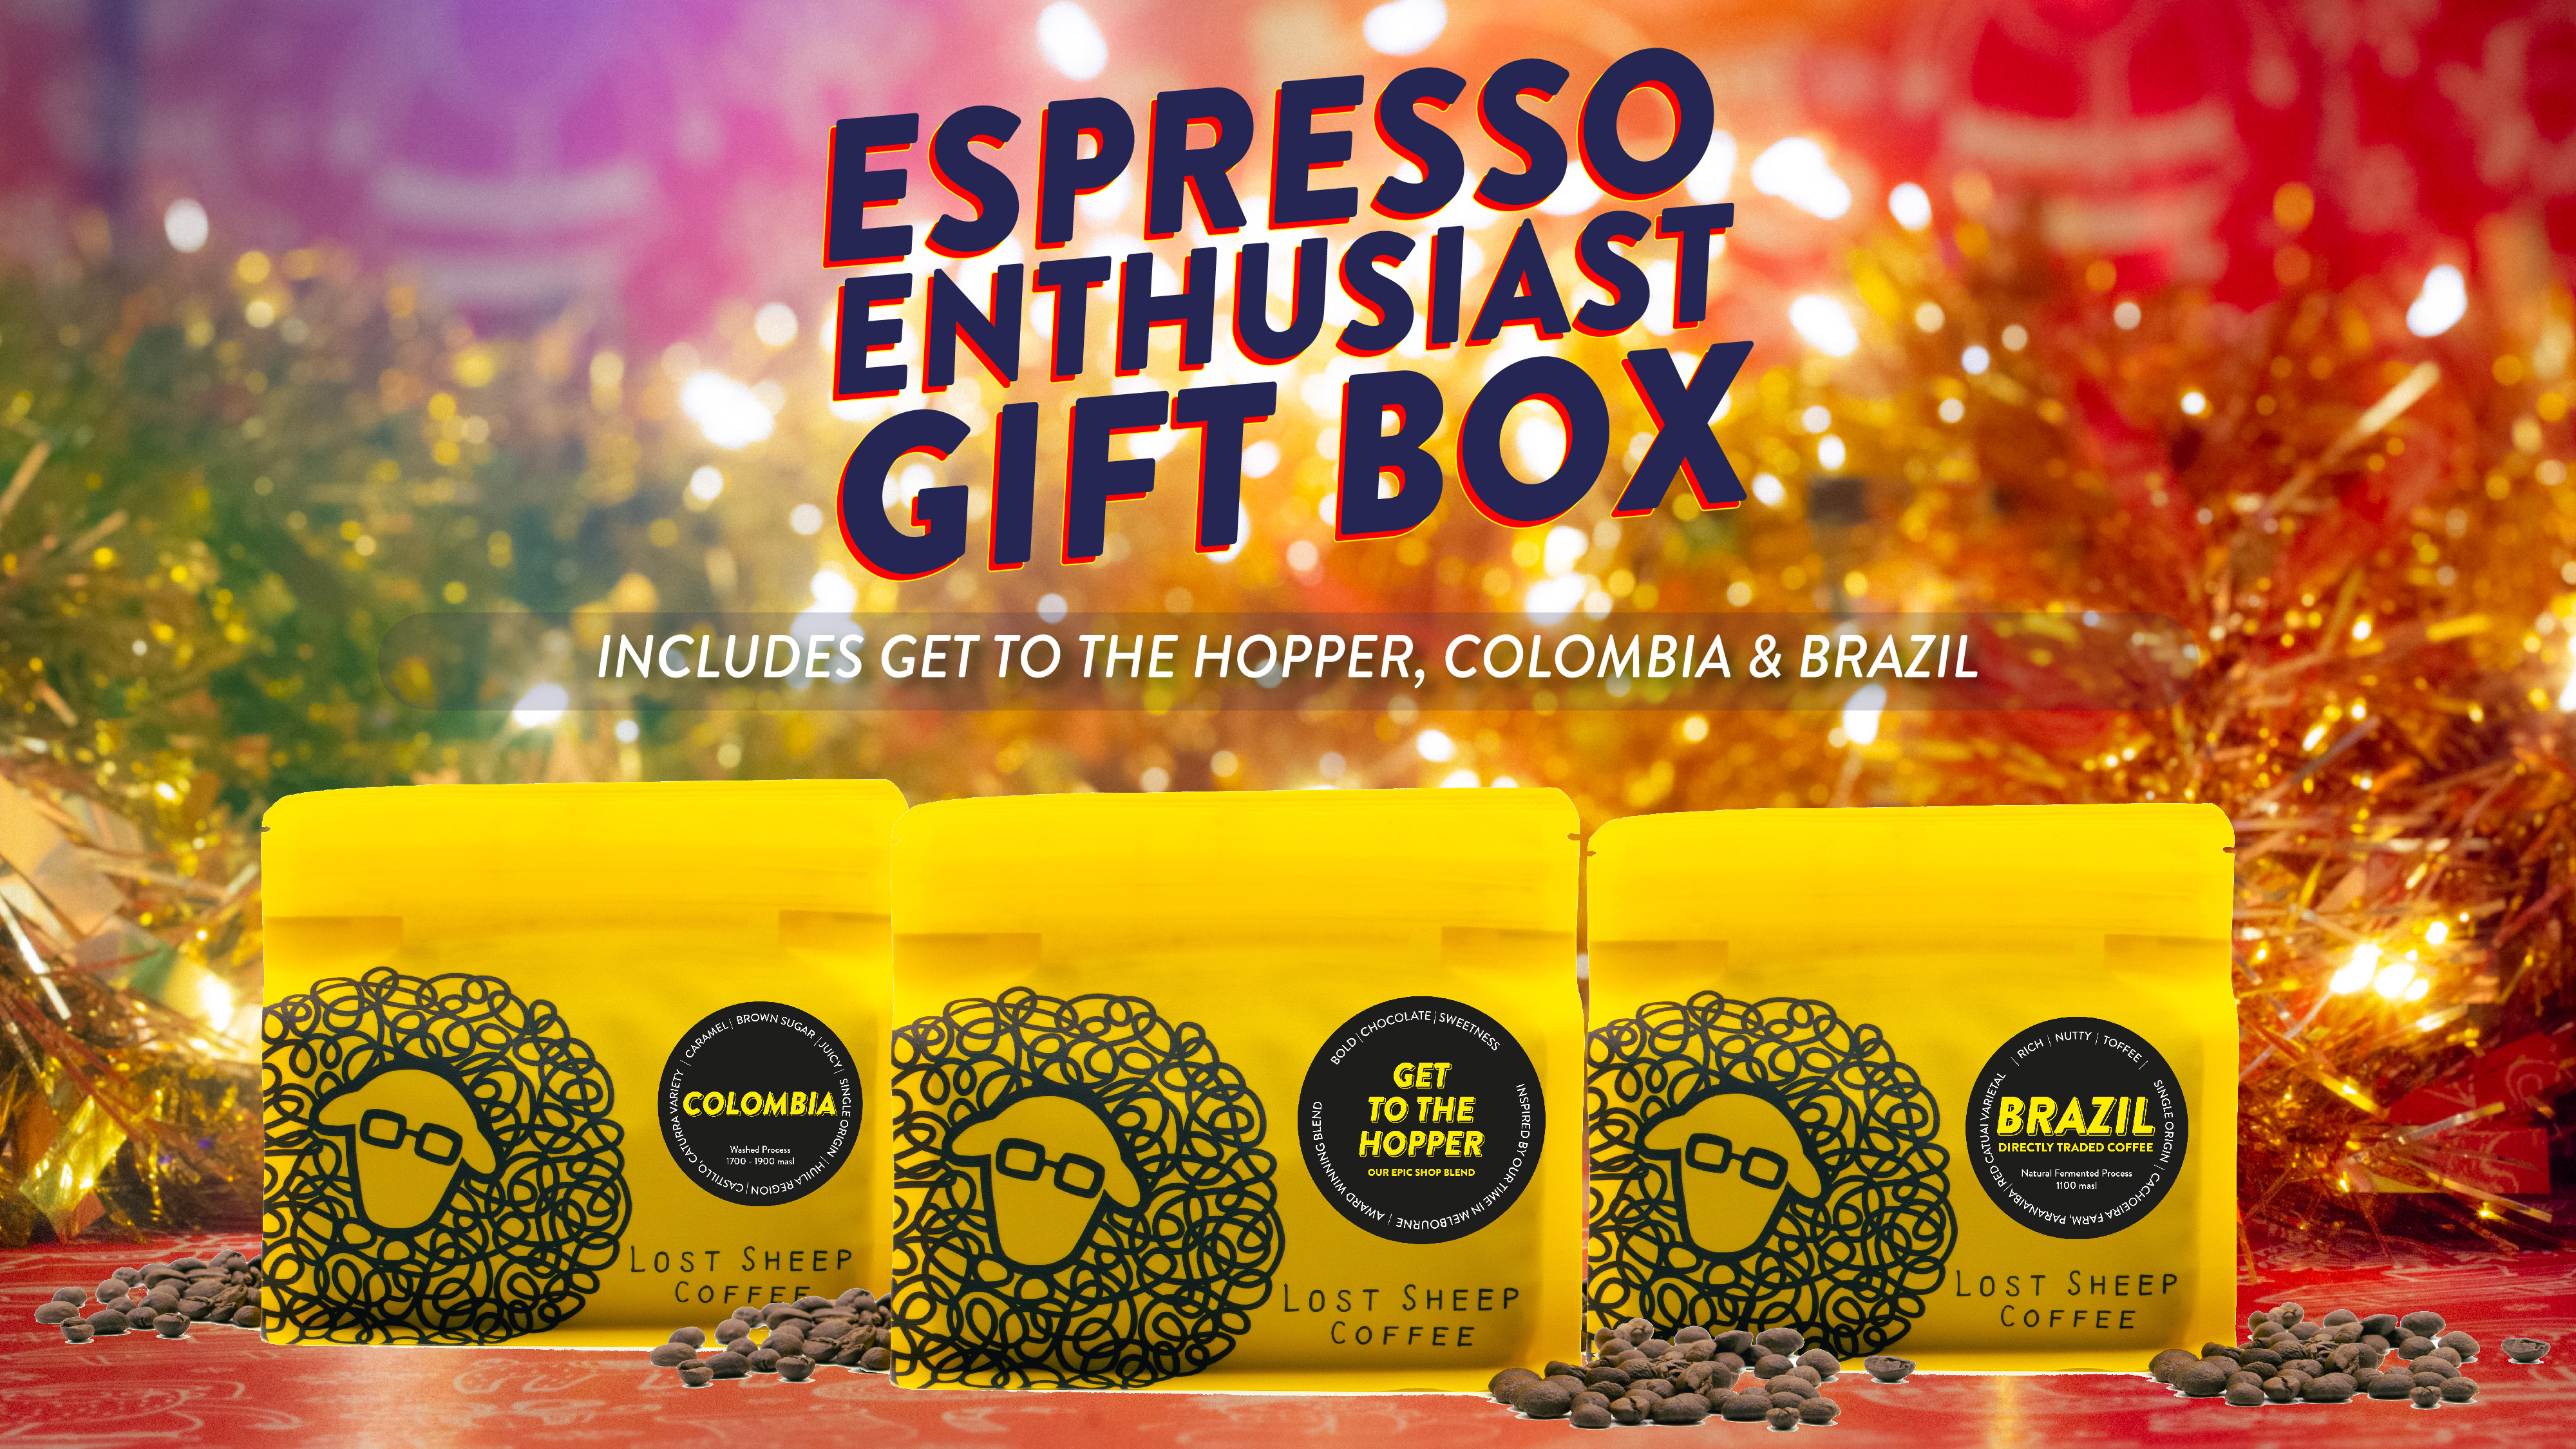 Lost Sheep Coffee Espresso Gift Box Image